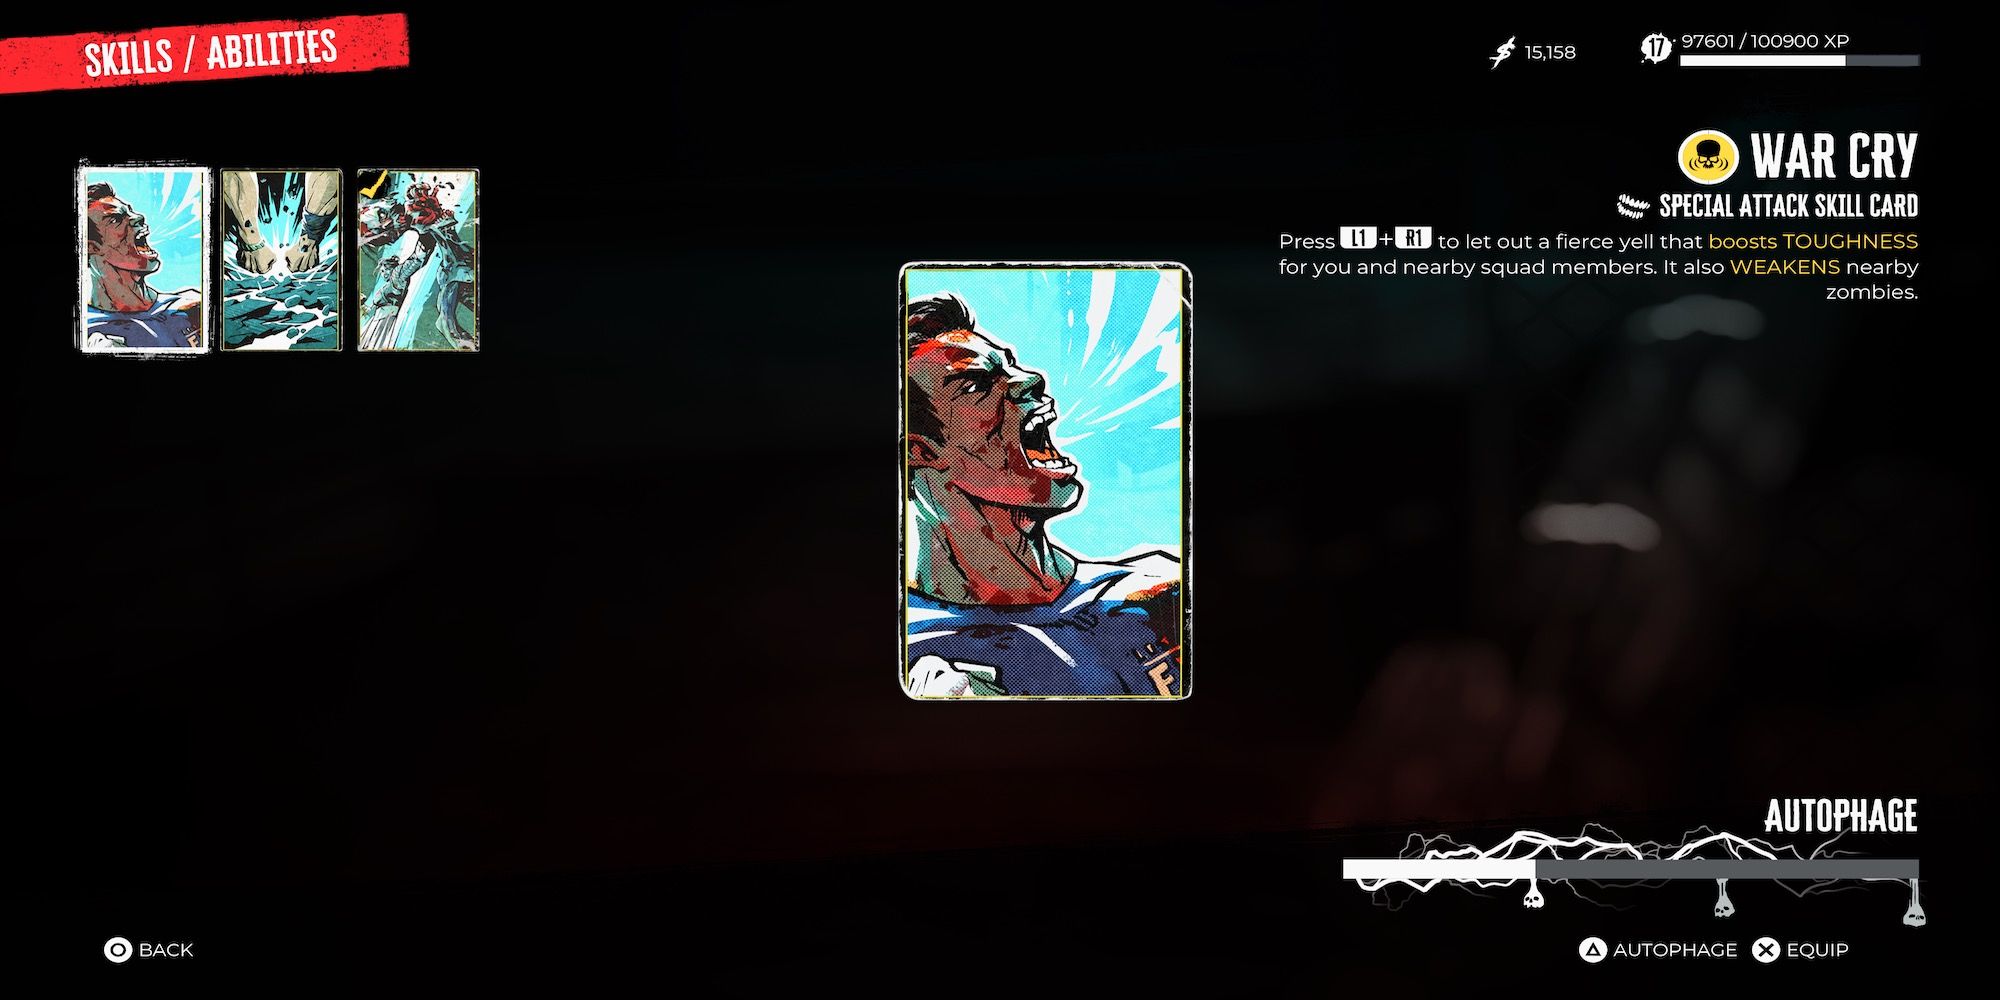 War Cry skill card in Dead Island 2